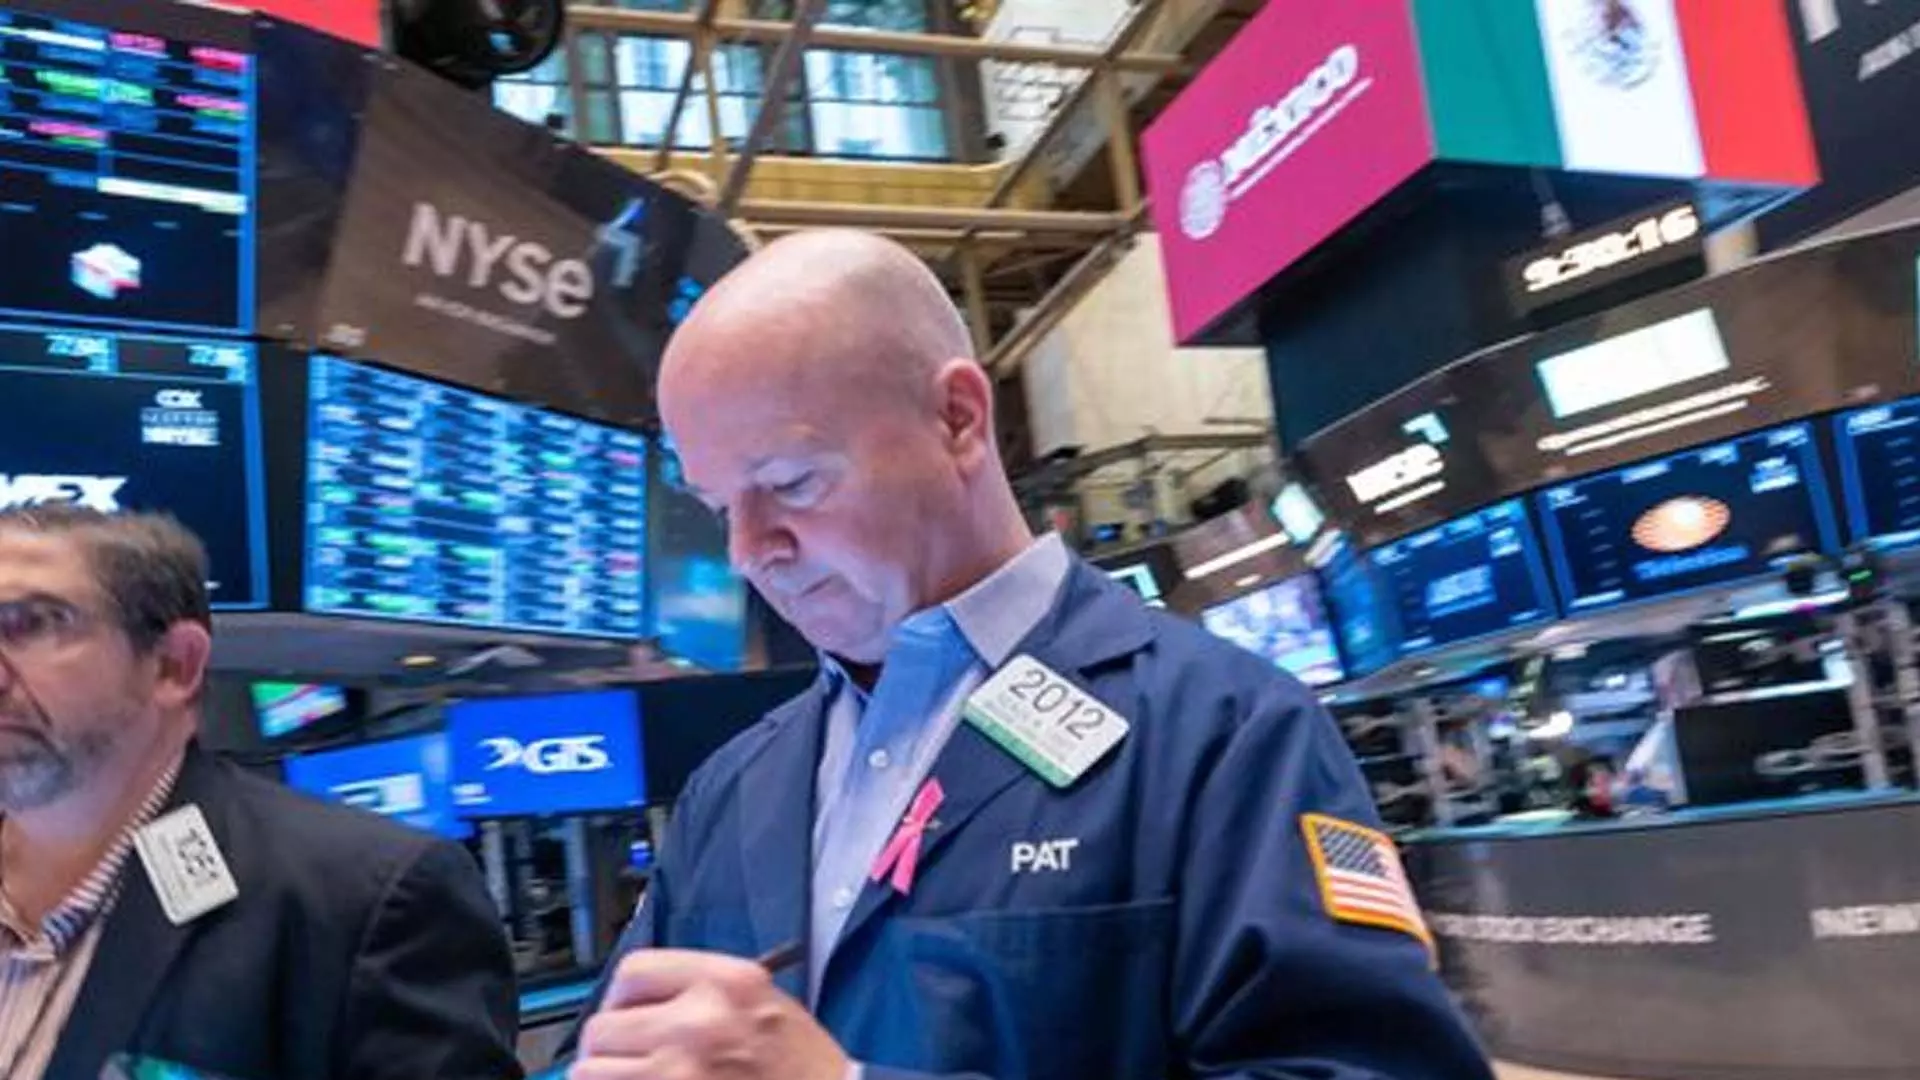 फेड दर में कटौती की आशावाद के कारण अमेरिकी शेयर आगे बढ़े